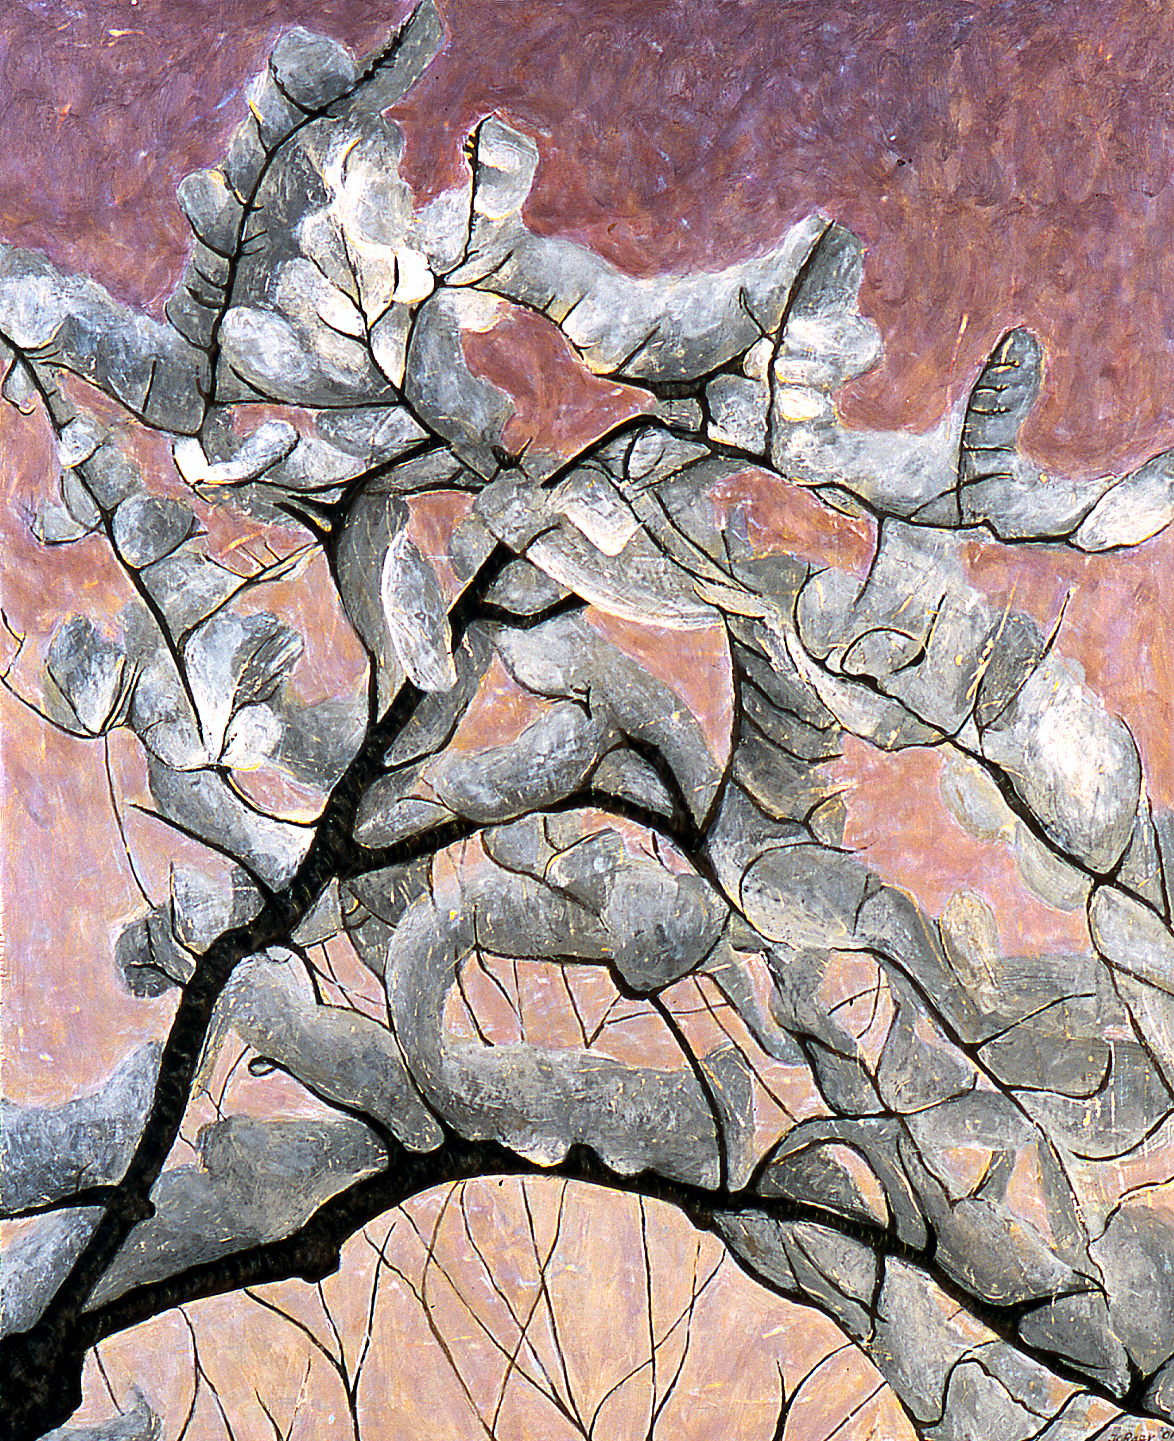 Dusk, VT, 2001, 38 ½ x 32, acrylic on wood panel, $2000